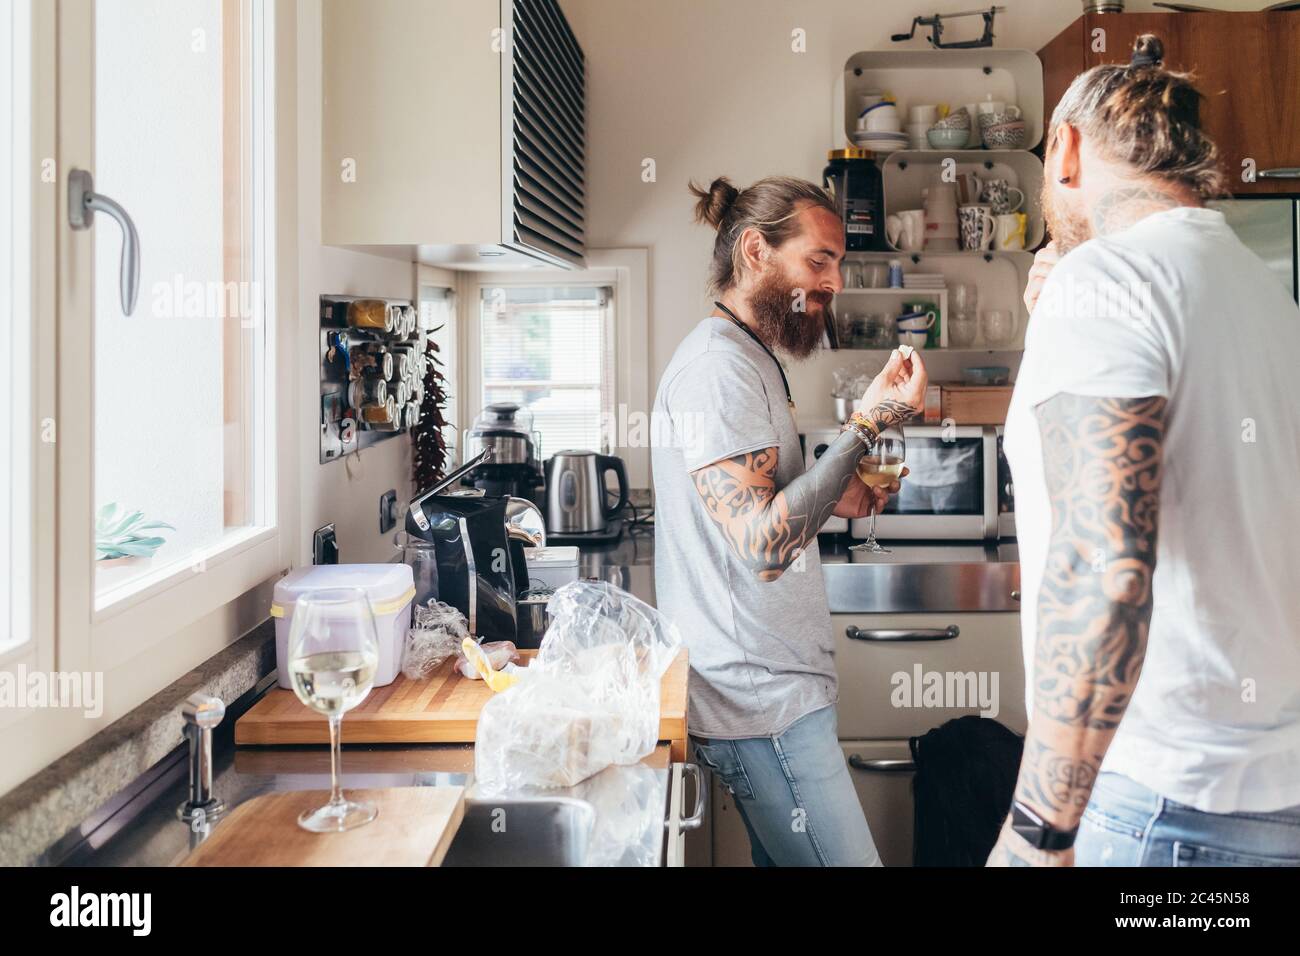 Zwei bärtige tätowierte Männer mit langen Brünetten Haaren stehen in einer Küche und essen. Stockfoto